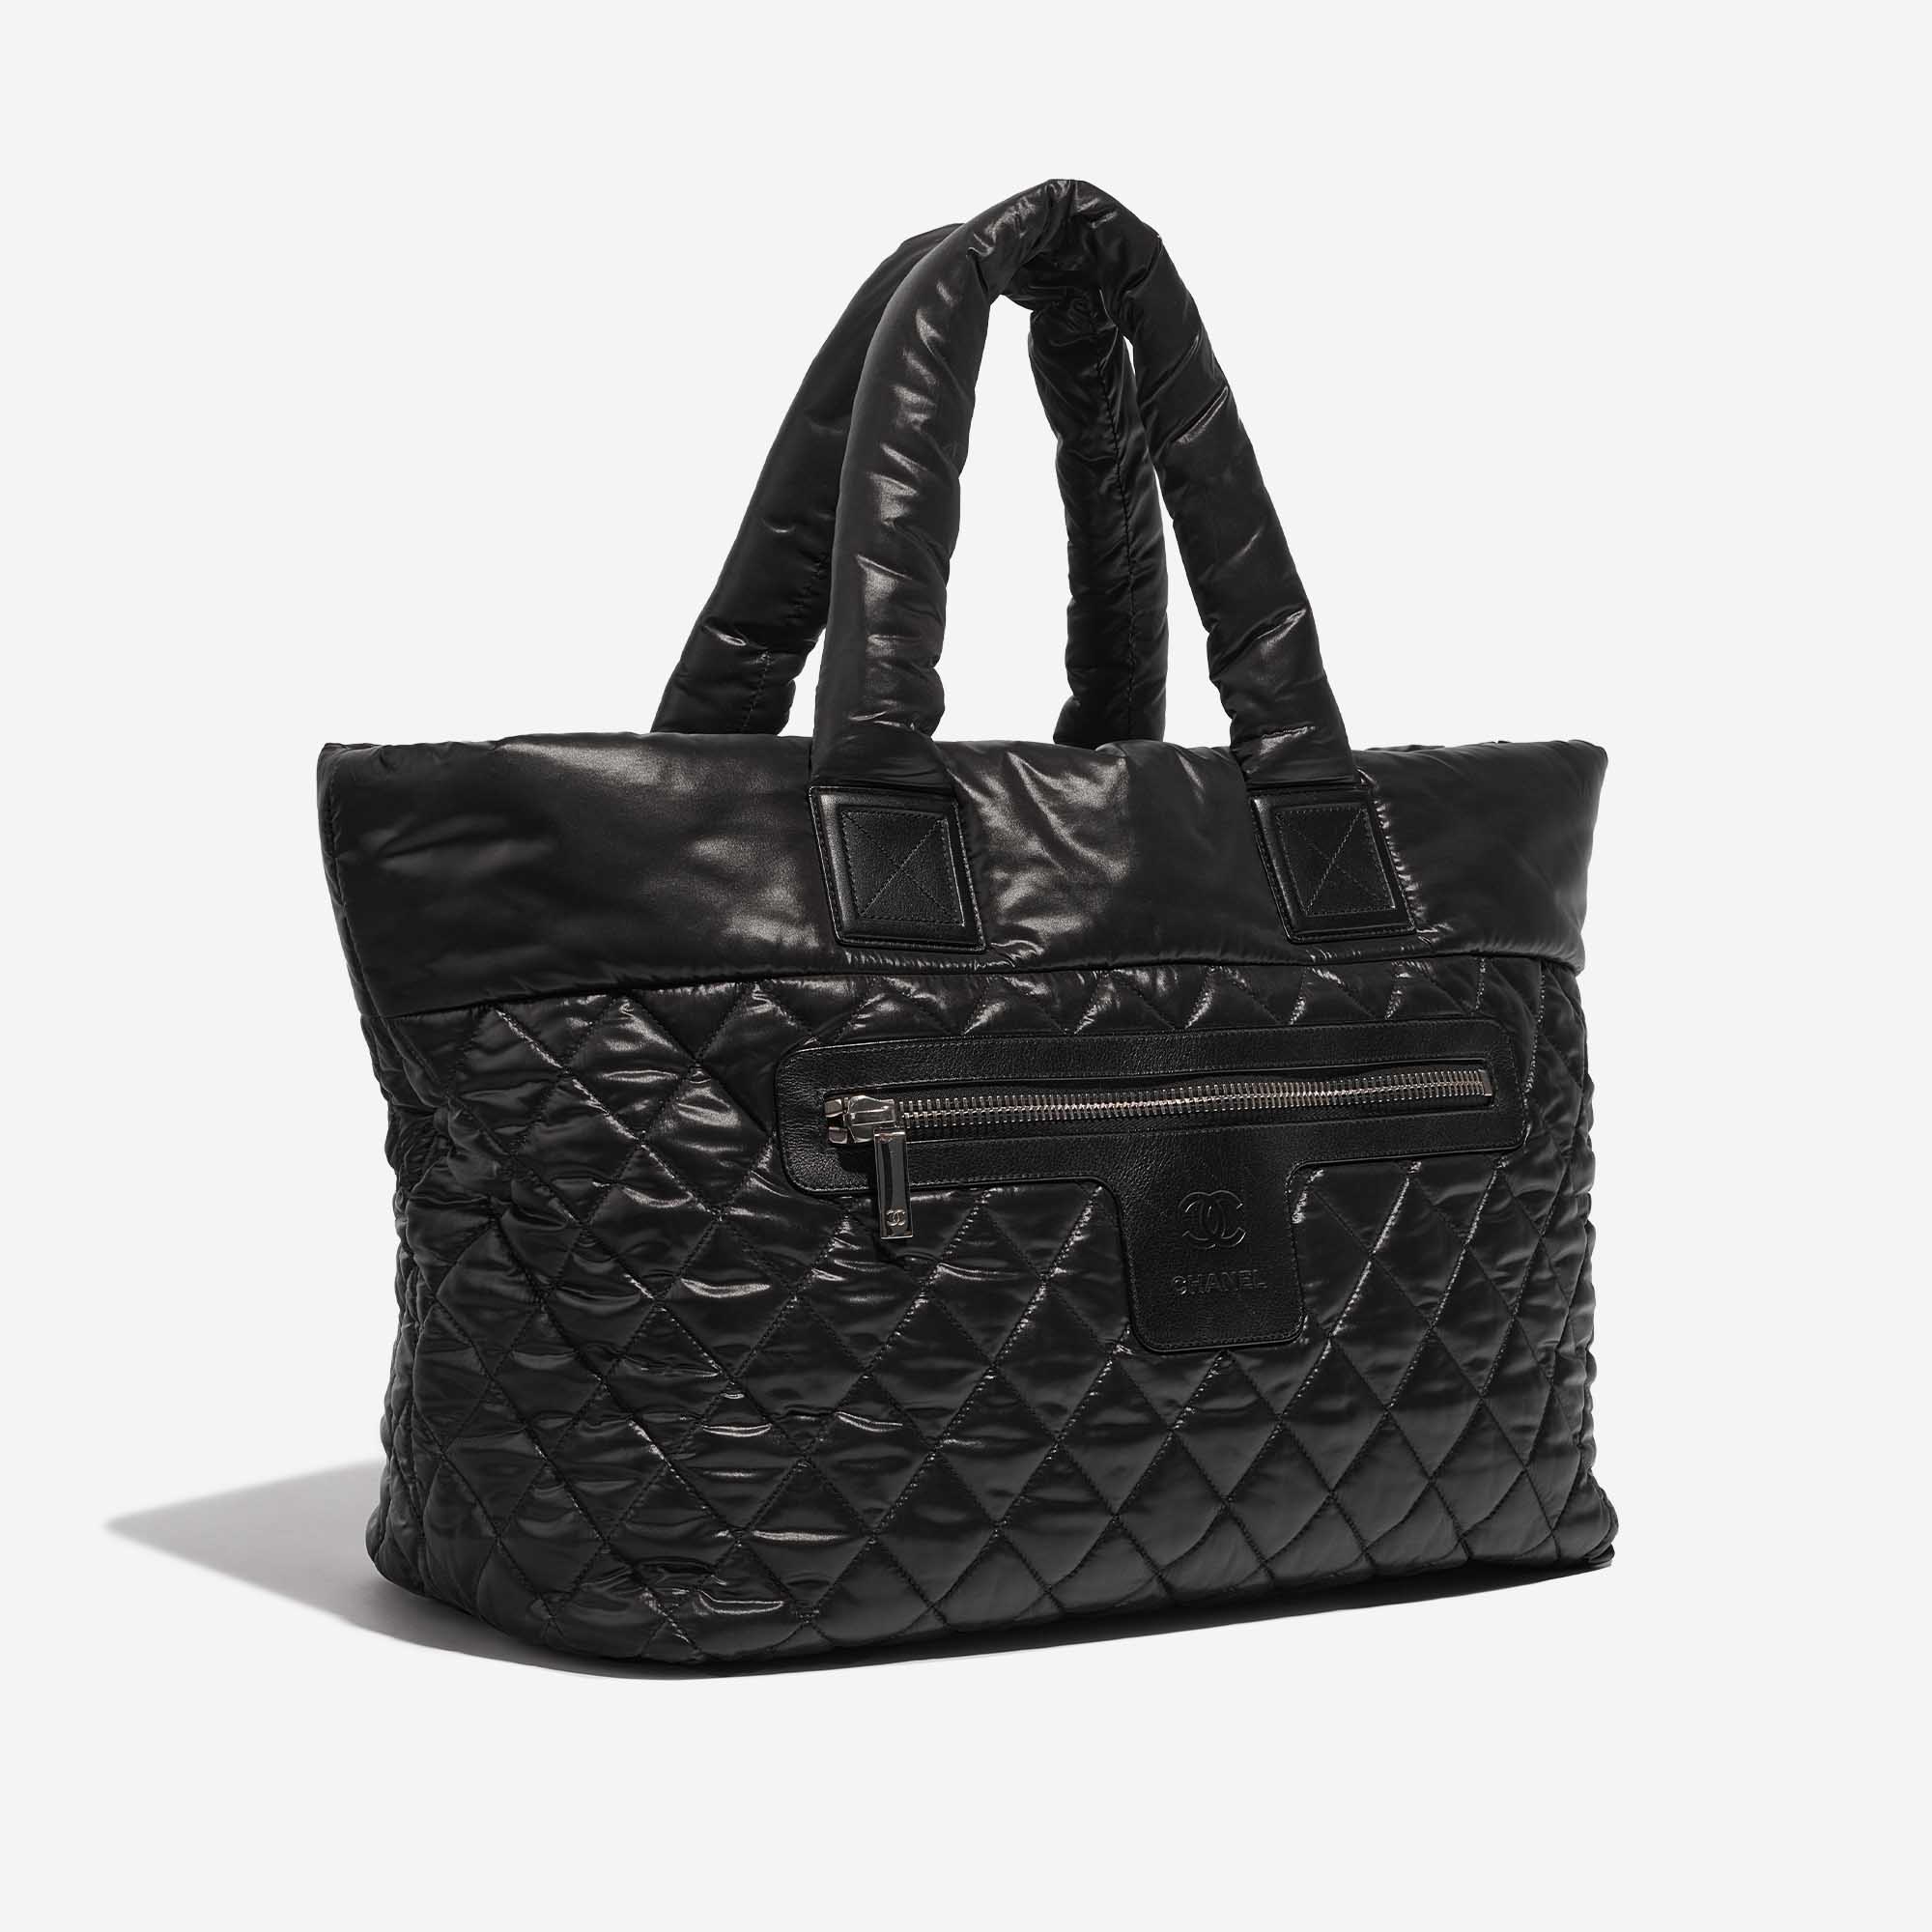 Sac Chanel d'occasion Cocoon Shopper Synthétique Noir Noir Côté Face | Vendez votre sac de créateur sur Saclab.com